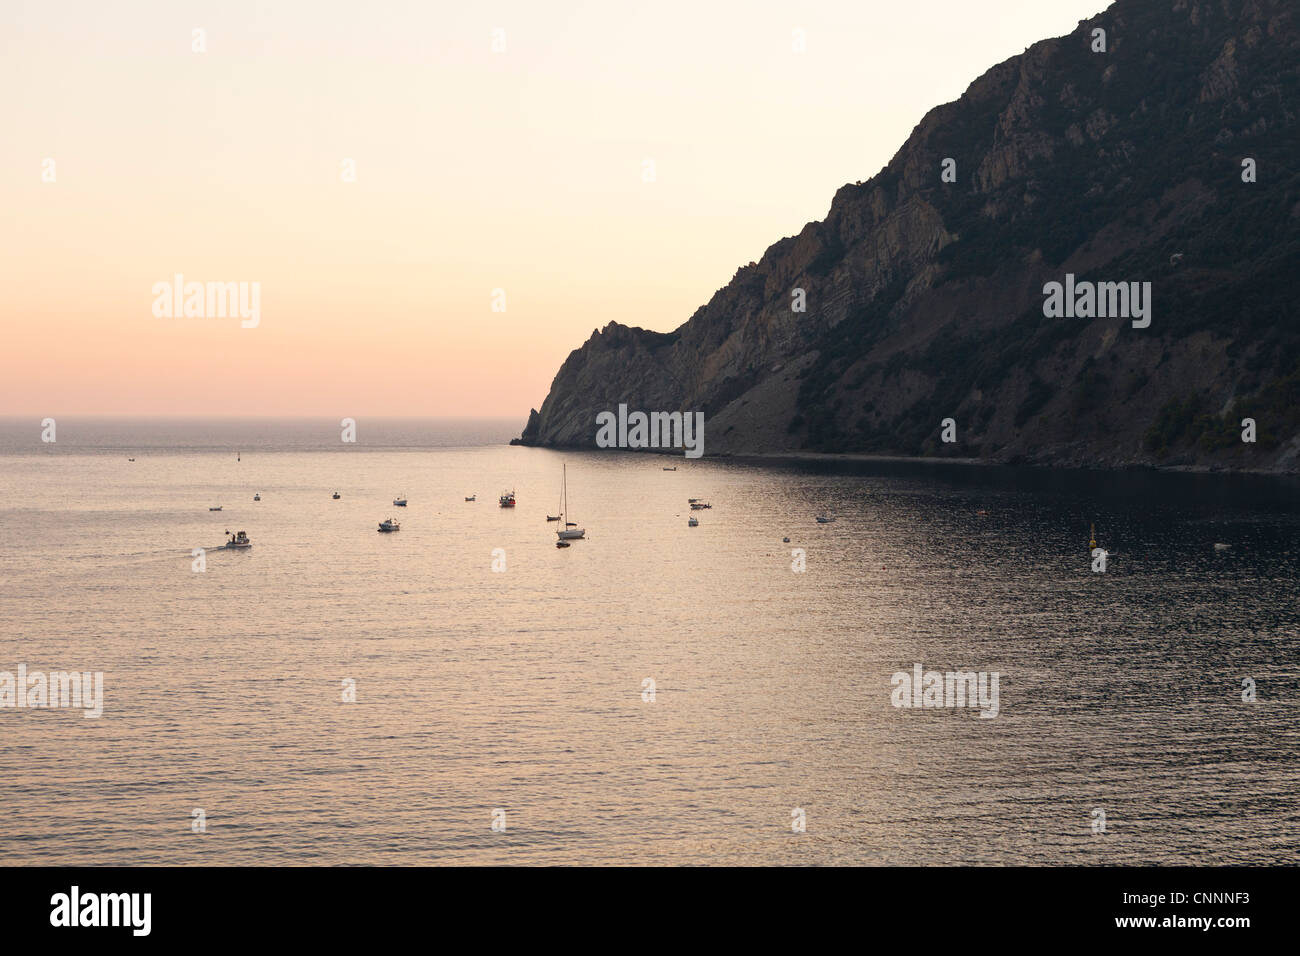 Shoreline, Monterosso al Mare, Cinque Terre National Park, Cinque Terre, Province of La Spezia, Liguria, Italy Stock Photo